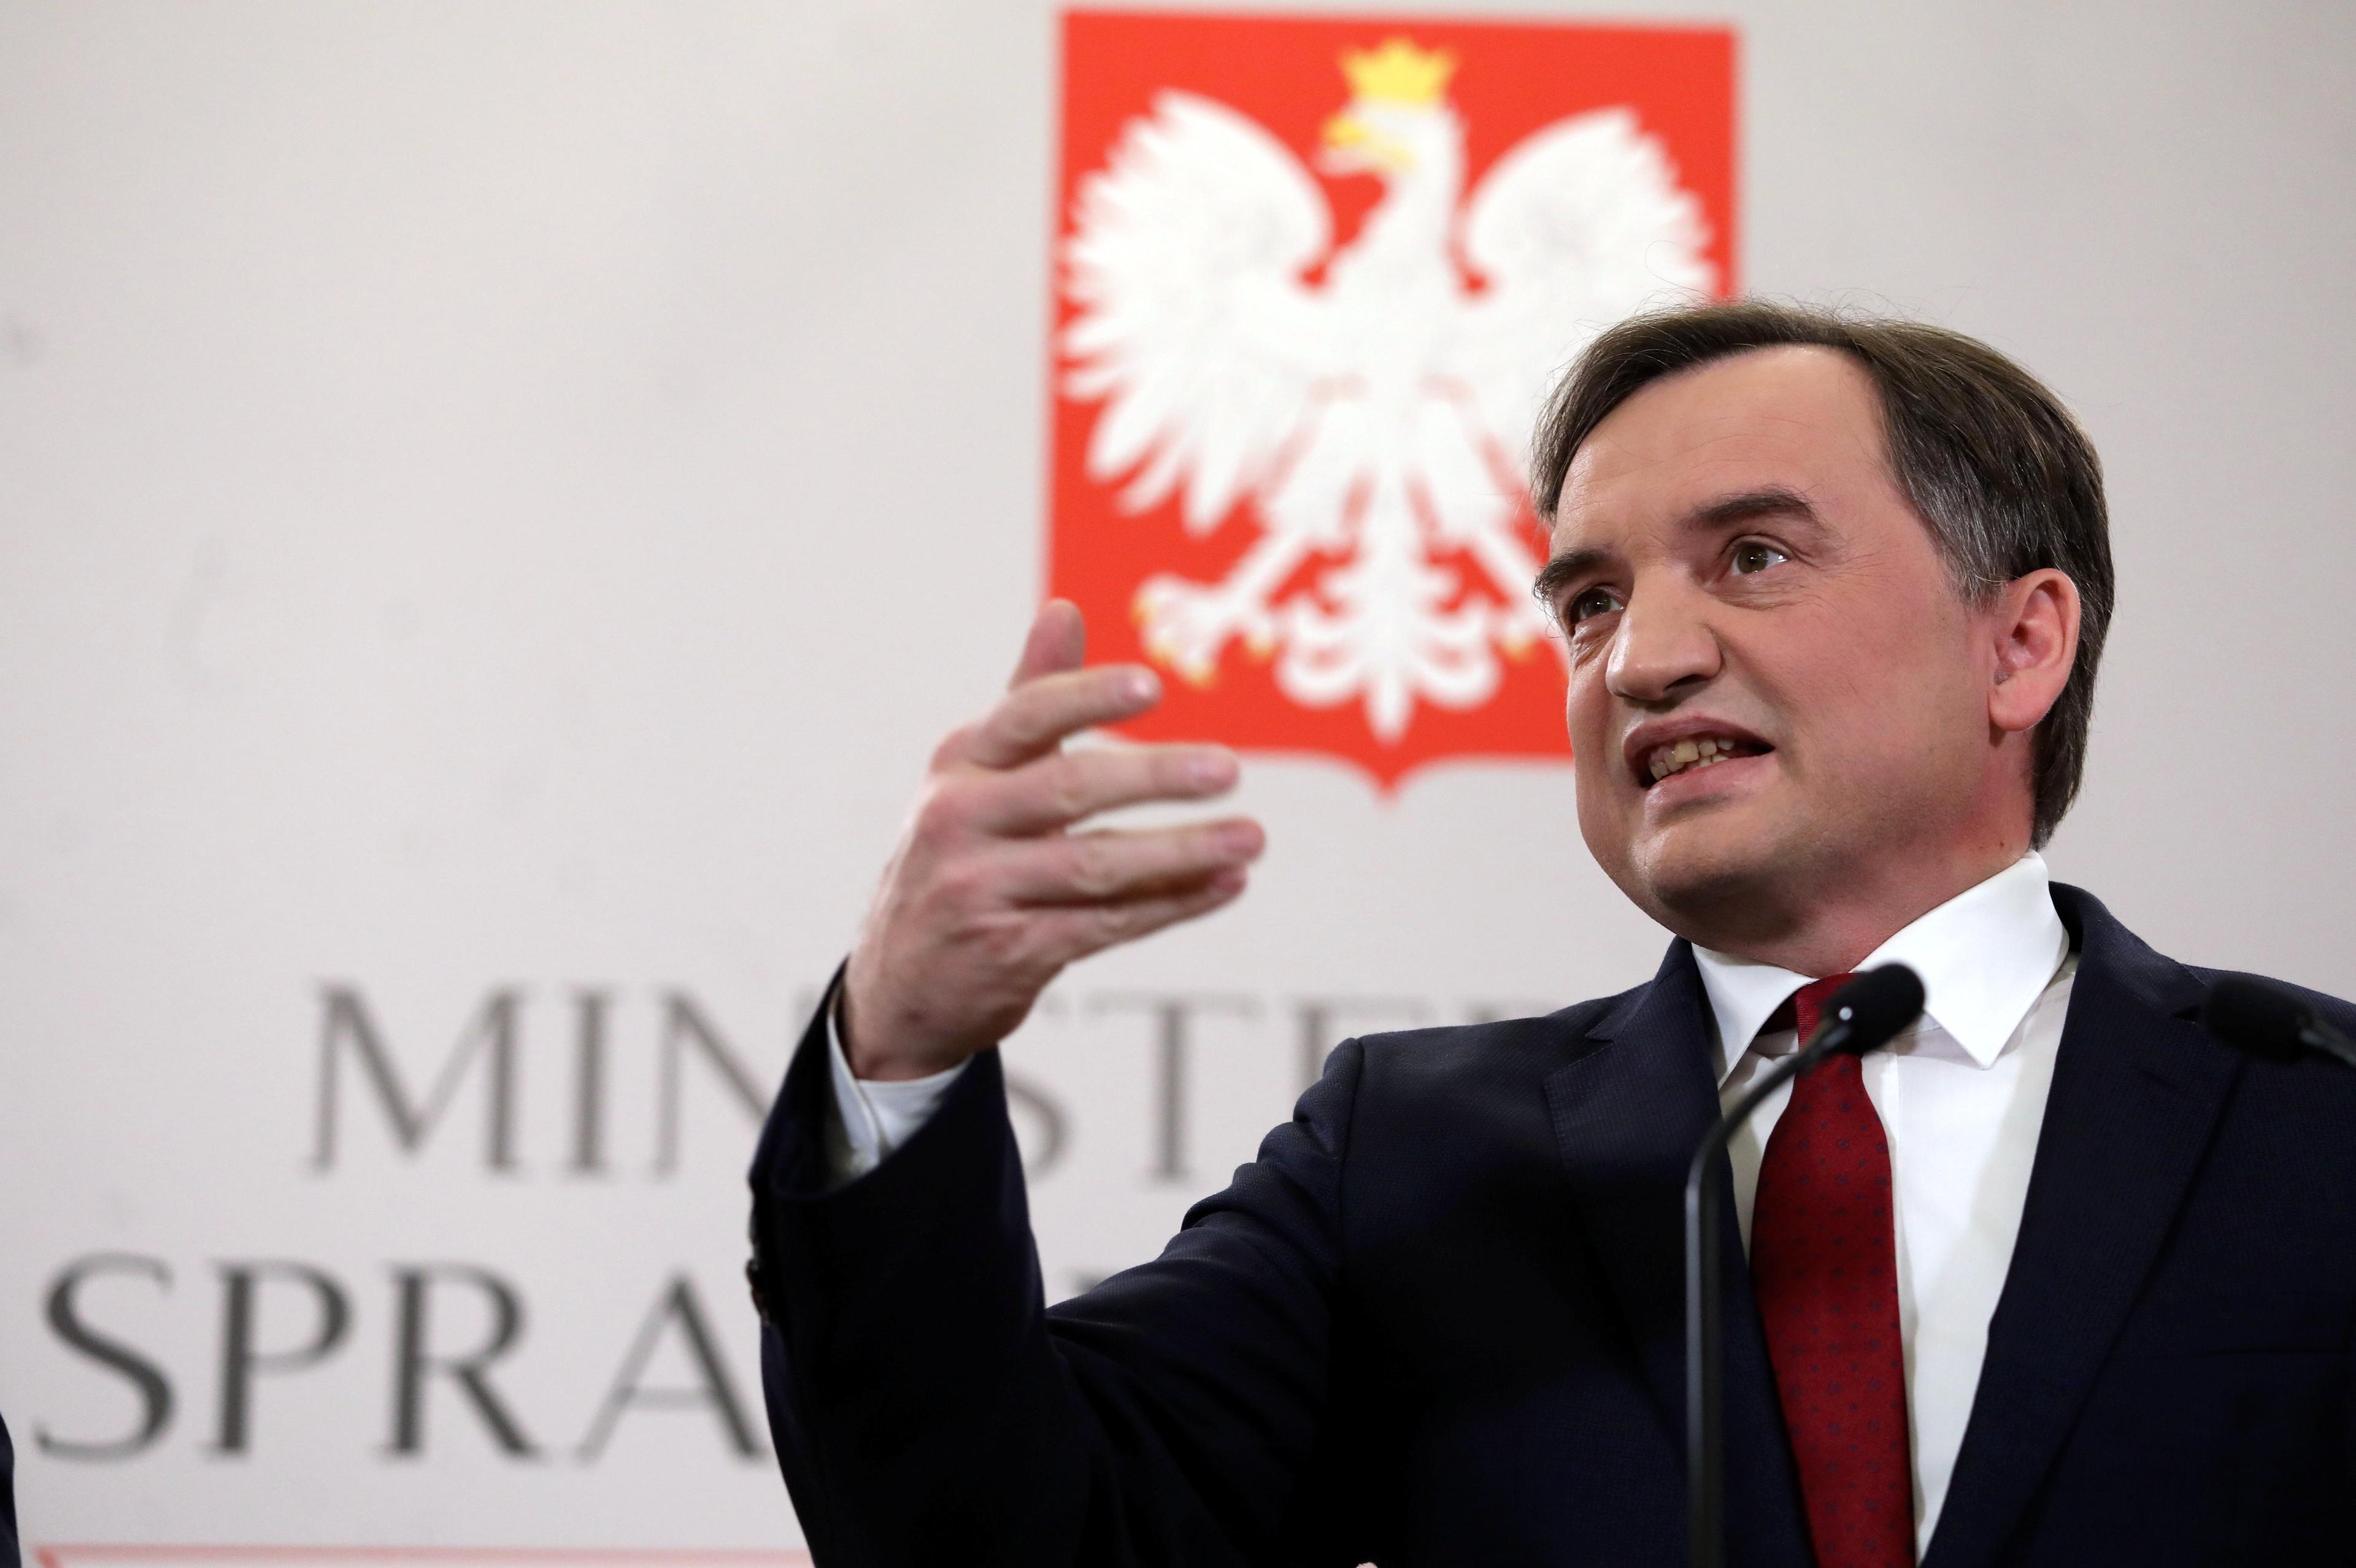 Minister Sprawiedliwości przemawia i ekspresyjnie gestykuluje prawą ręką na tle godła Polski